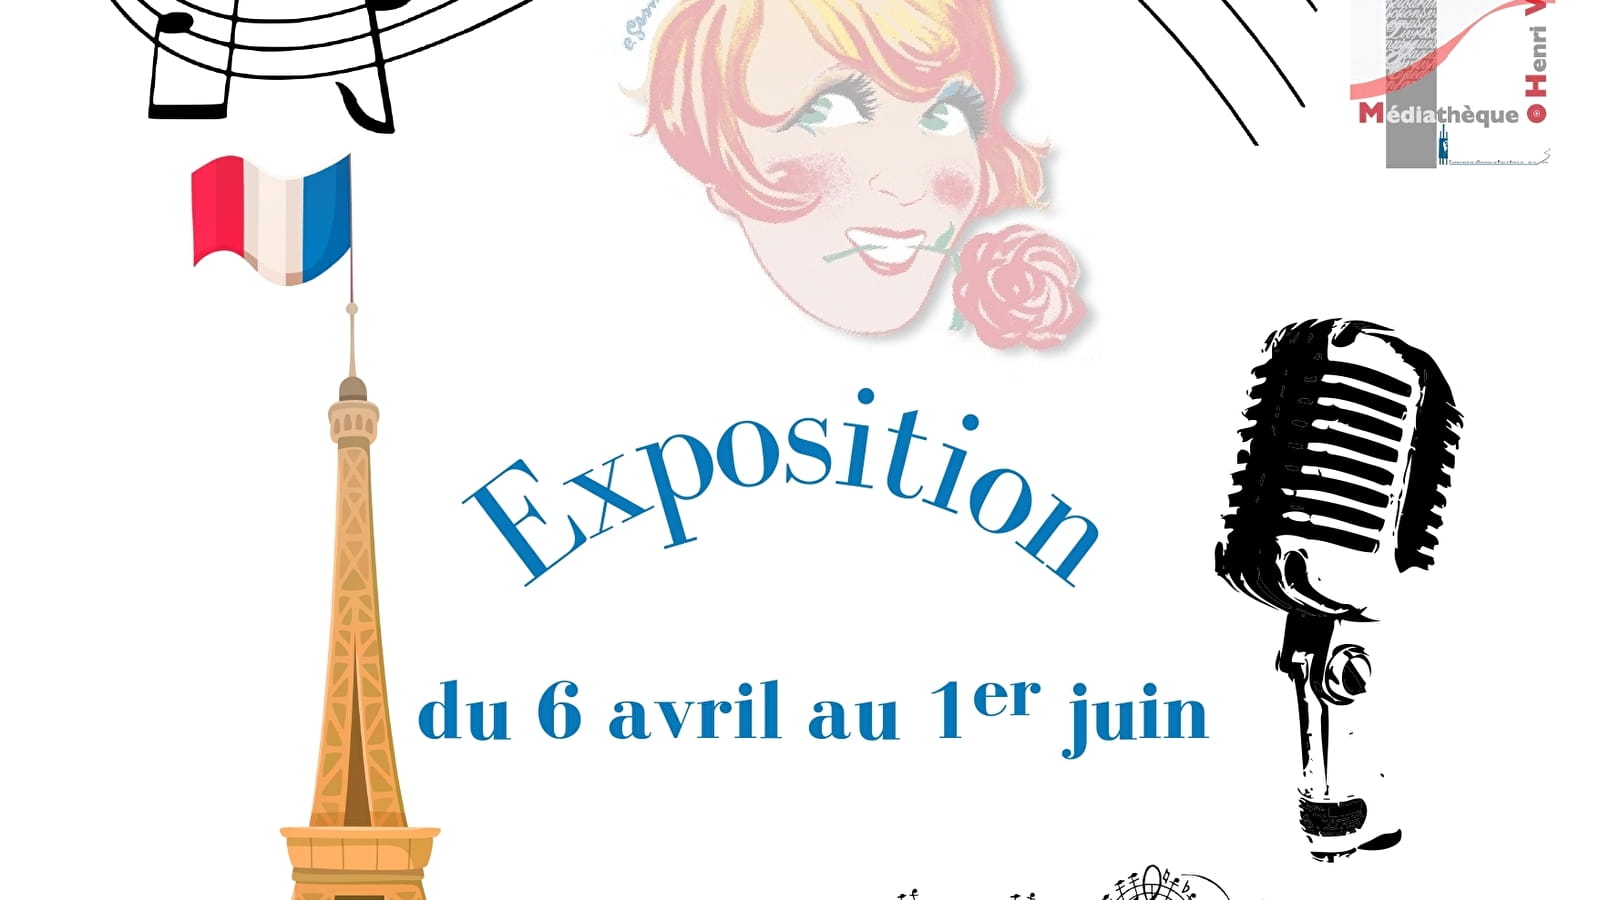  La chanson française' exhibition